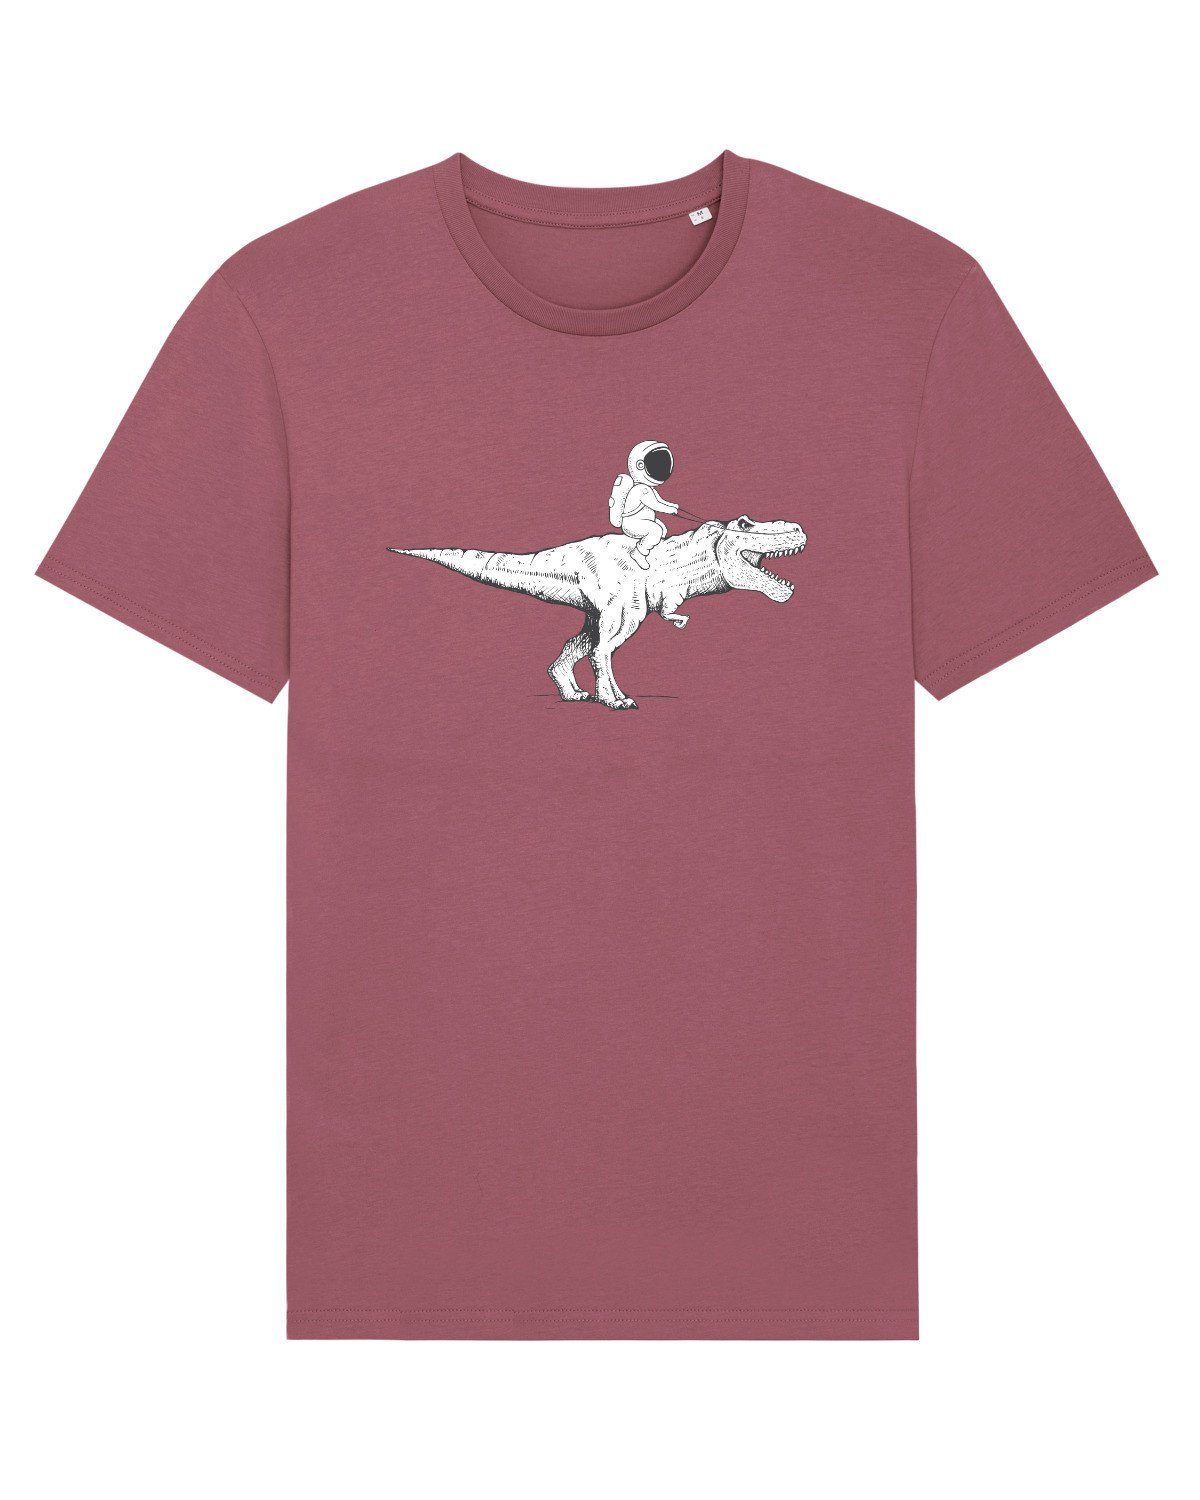 (1-tlg) Apparel Print-Shirt on Astronaut wat? T-Rex pertrol